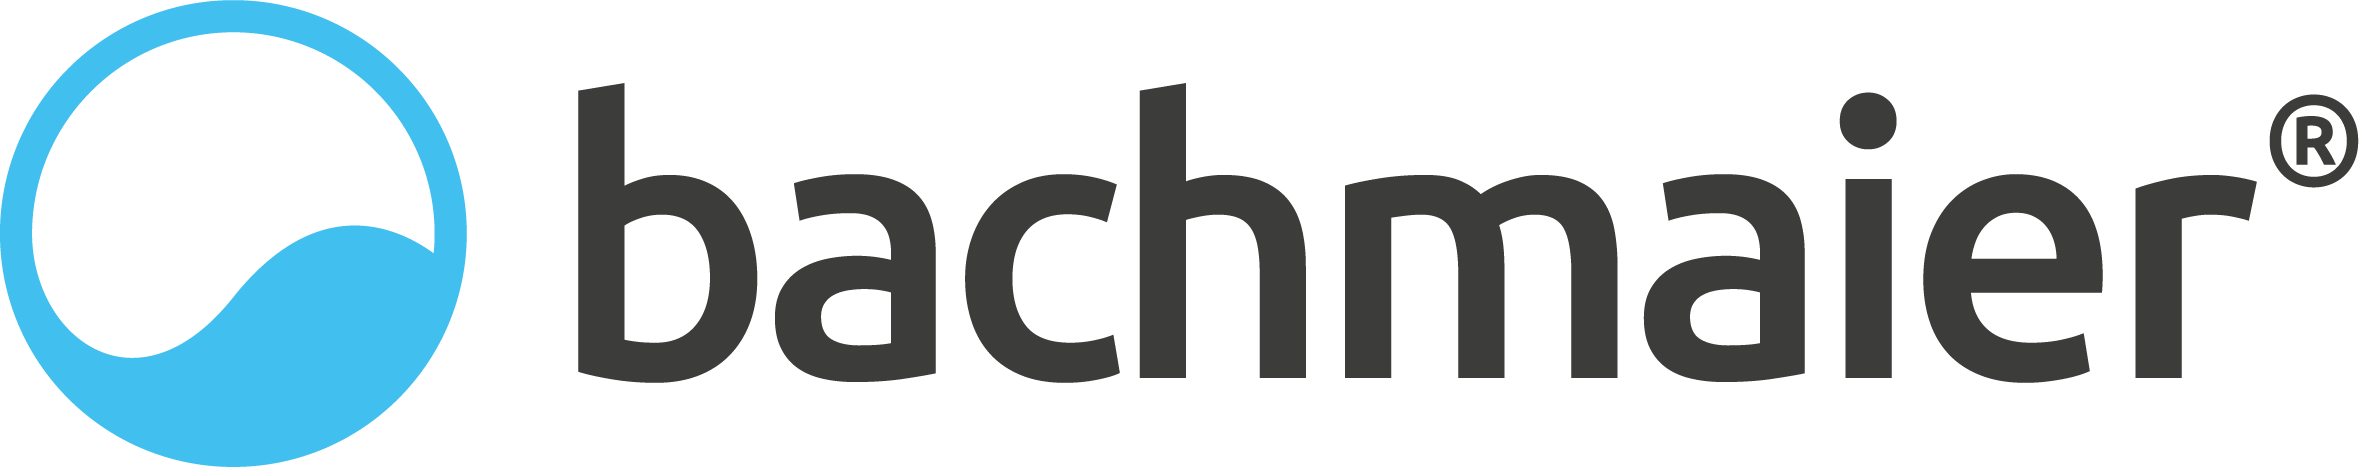 Bachmaier GmbH Logo